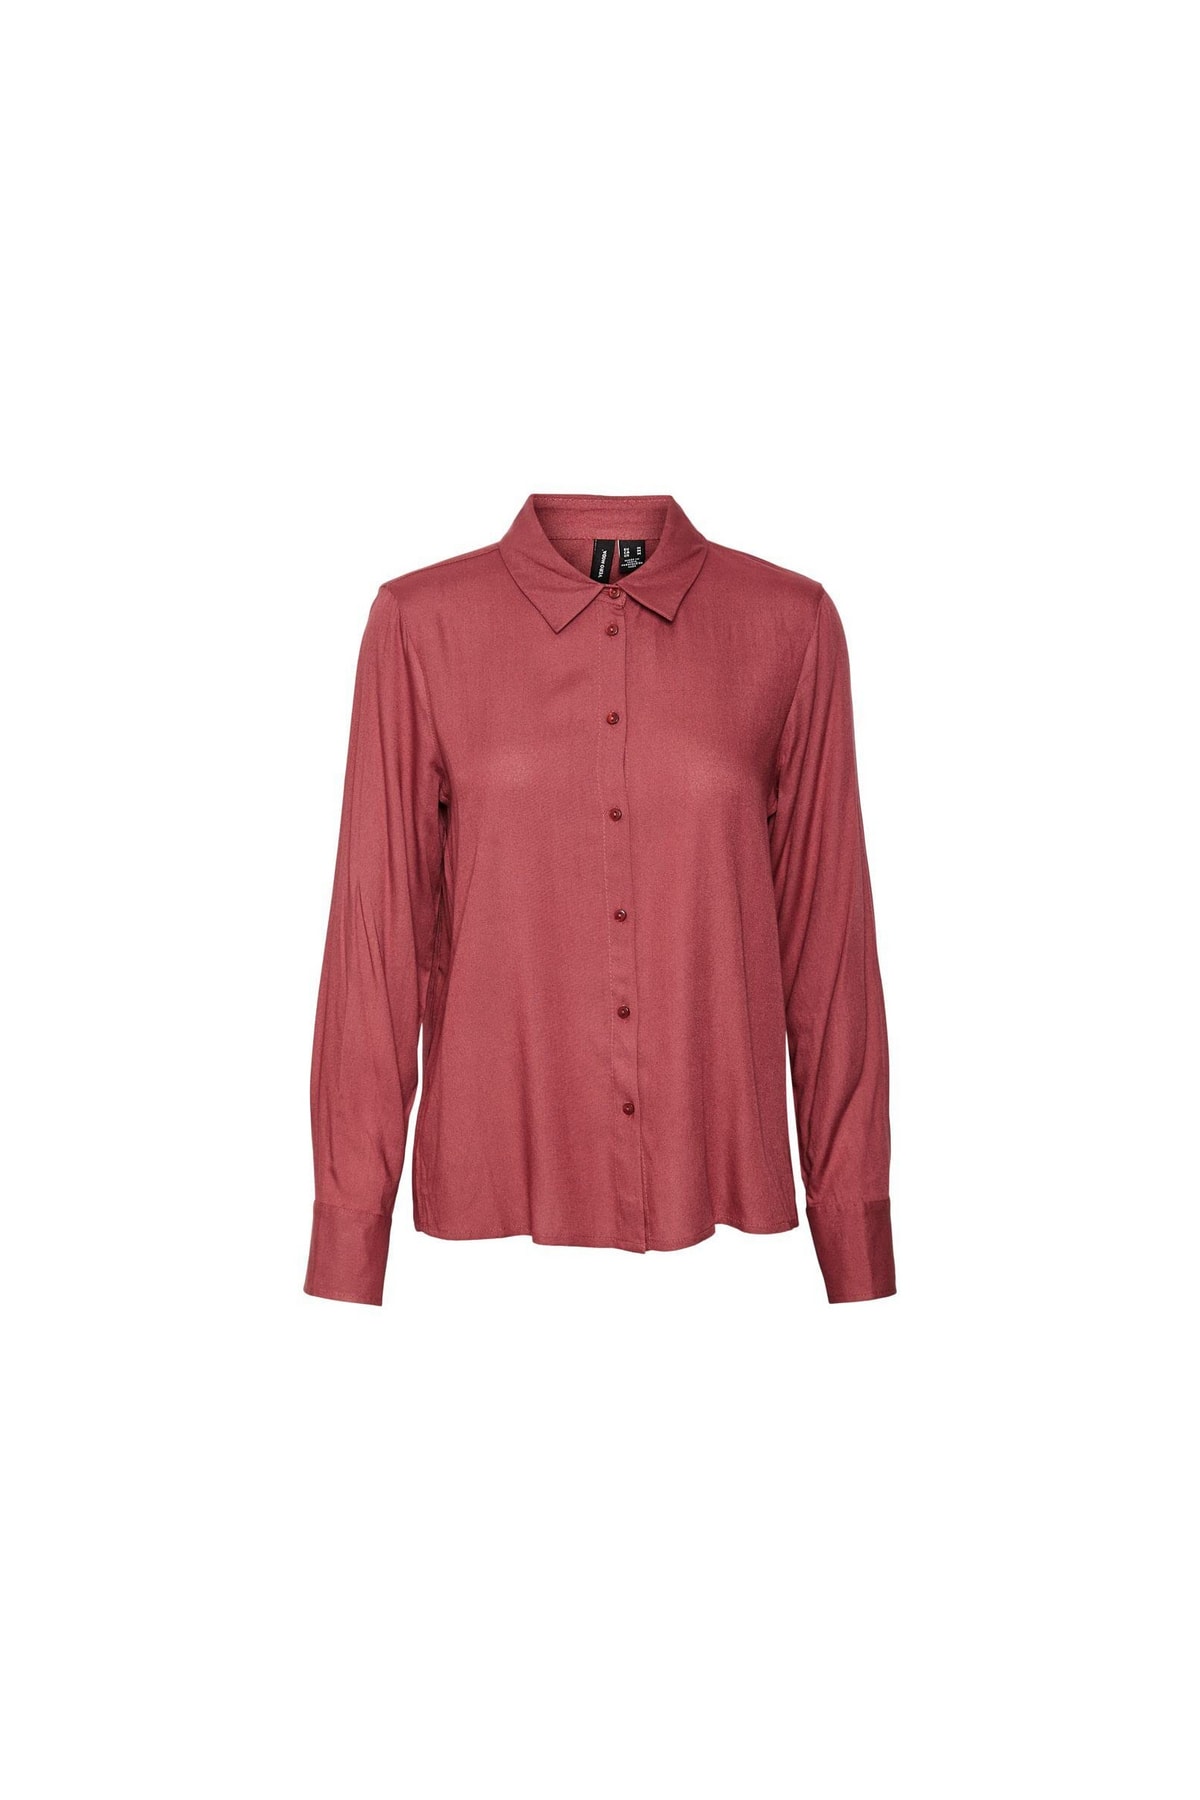 Vero Moda Bluse Rosa Regular Fit Fast ausverkauft